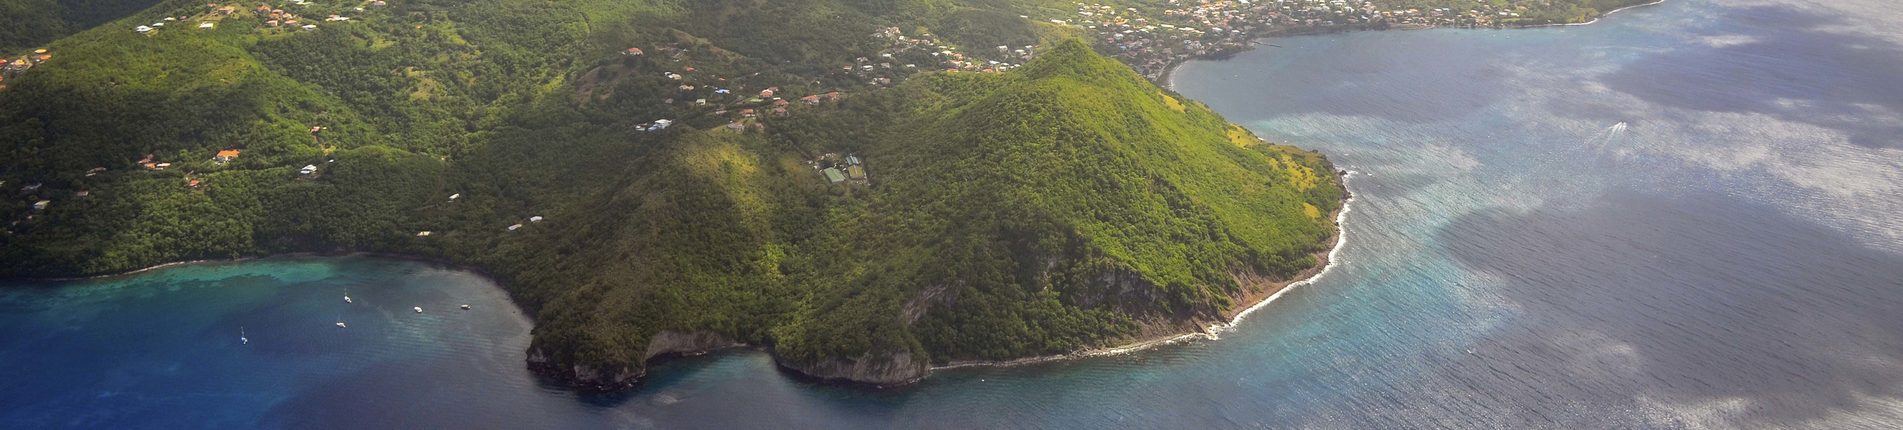 Fort-de-France (Martinik)